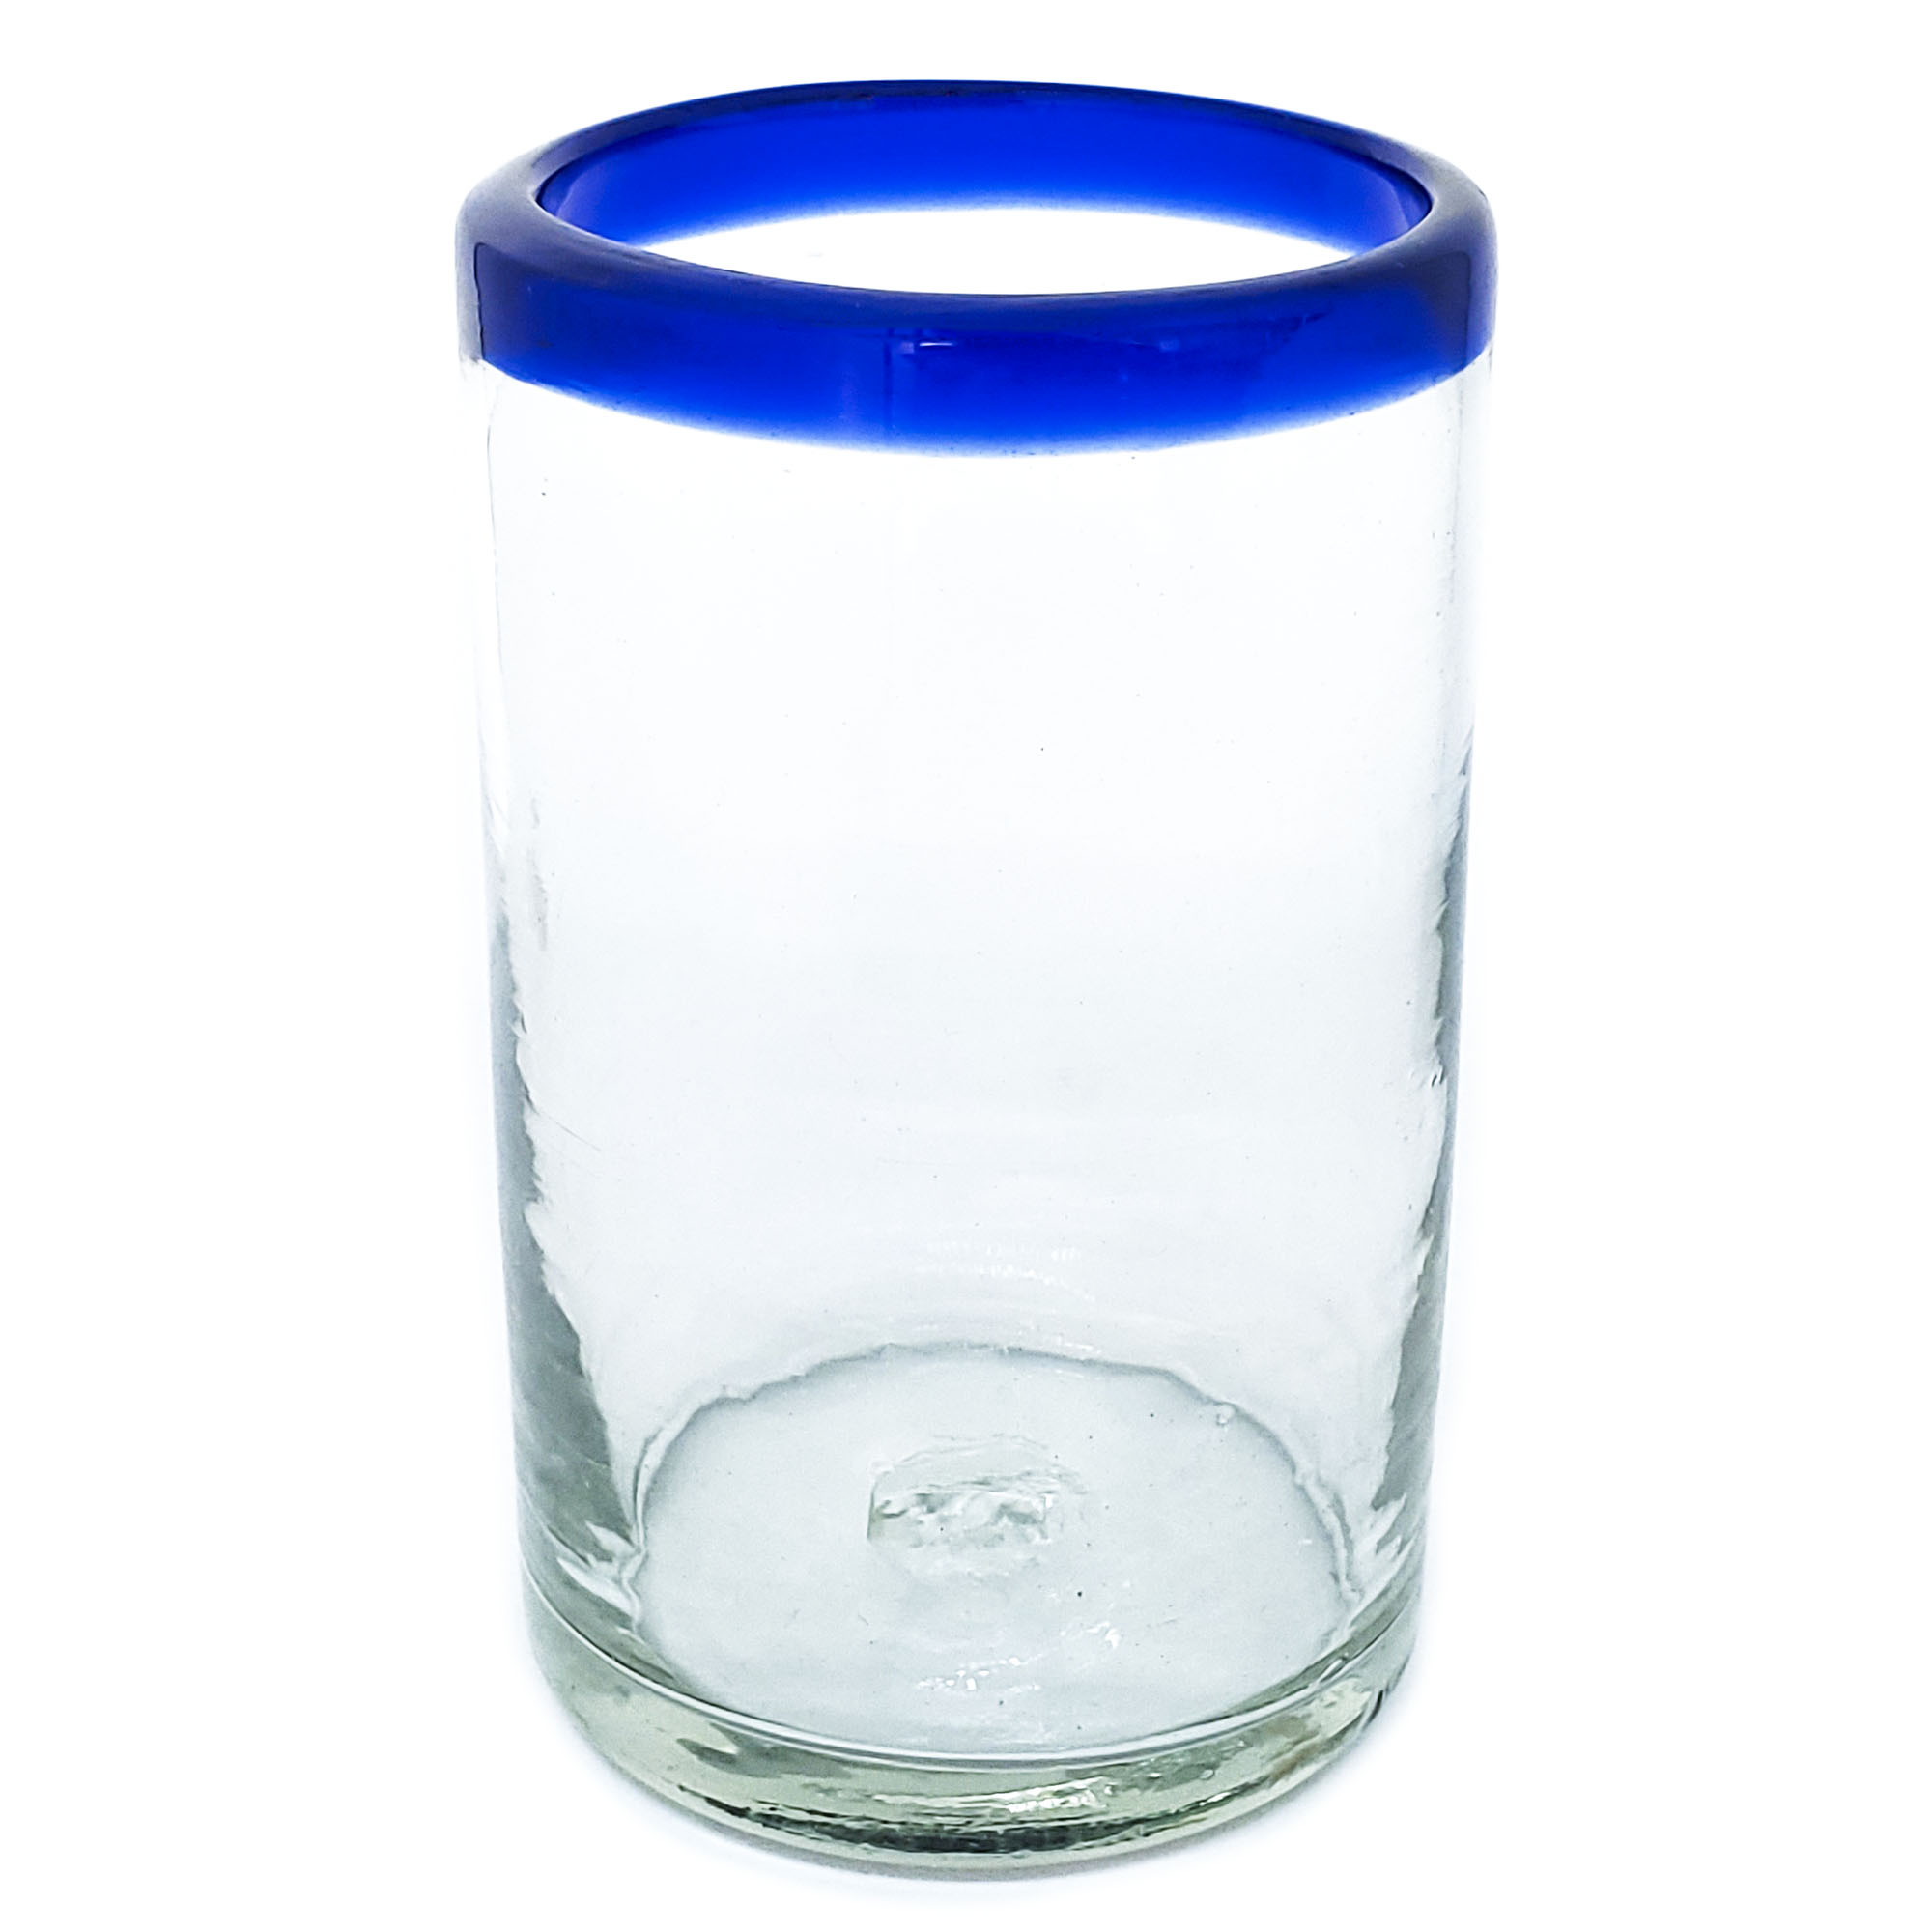 Borde de Color al Mayoreo / vasos grandes con borde azul cobalto / Éstos artesanales vasos le darán un toque clásico a su bebida favorita.